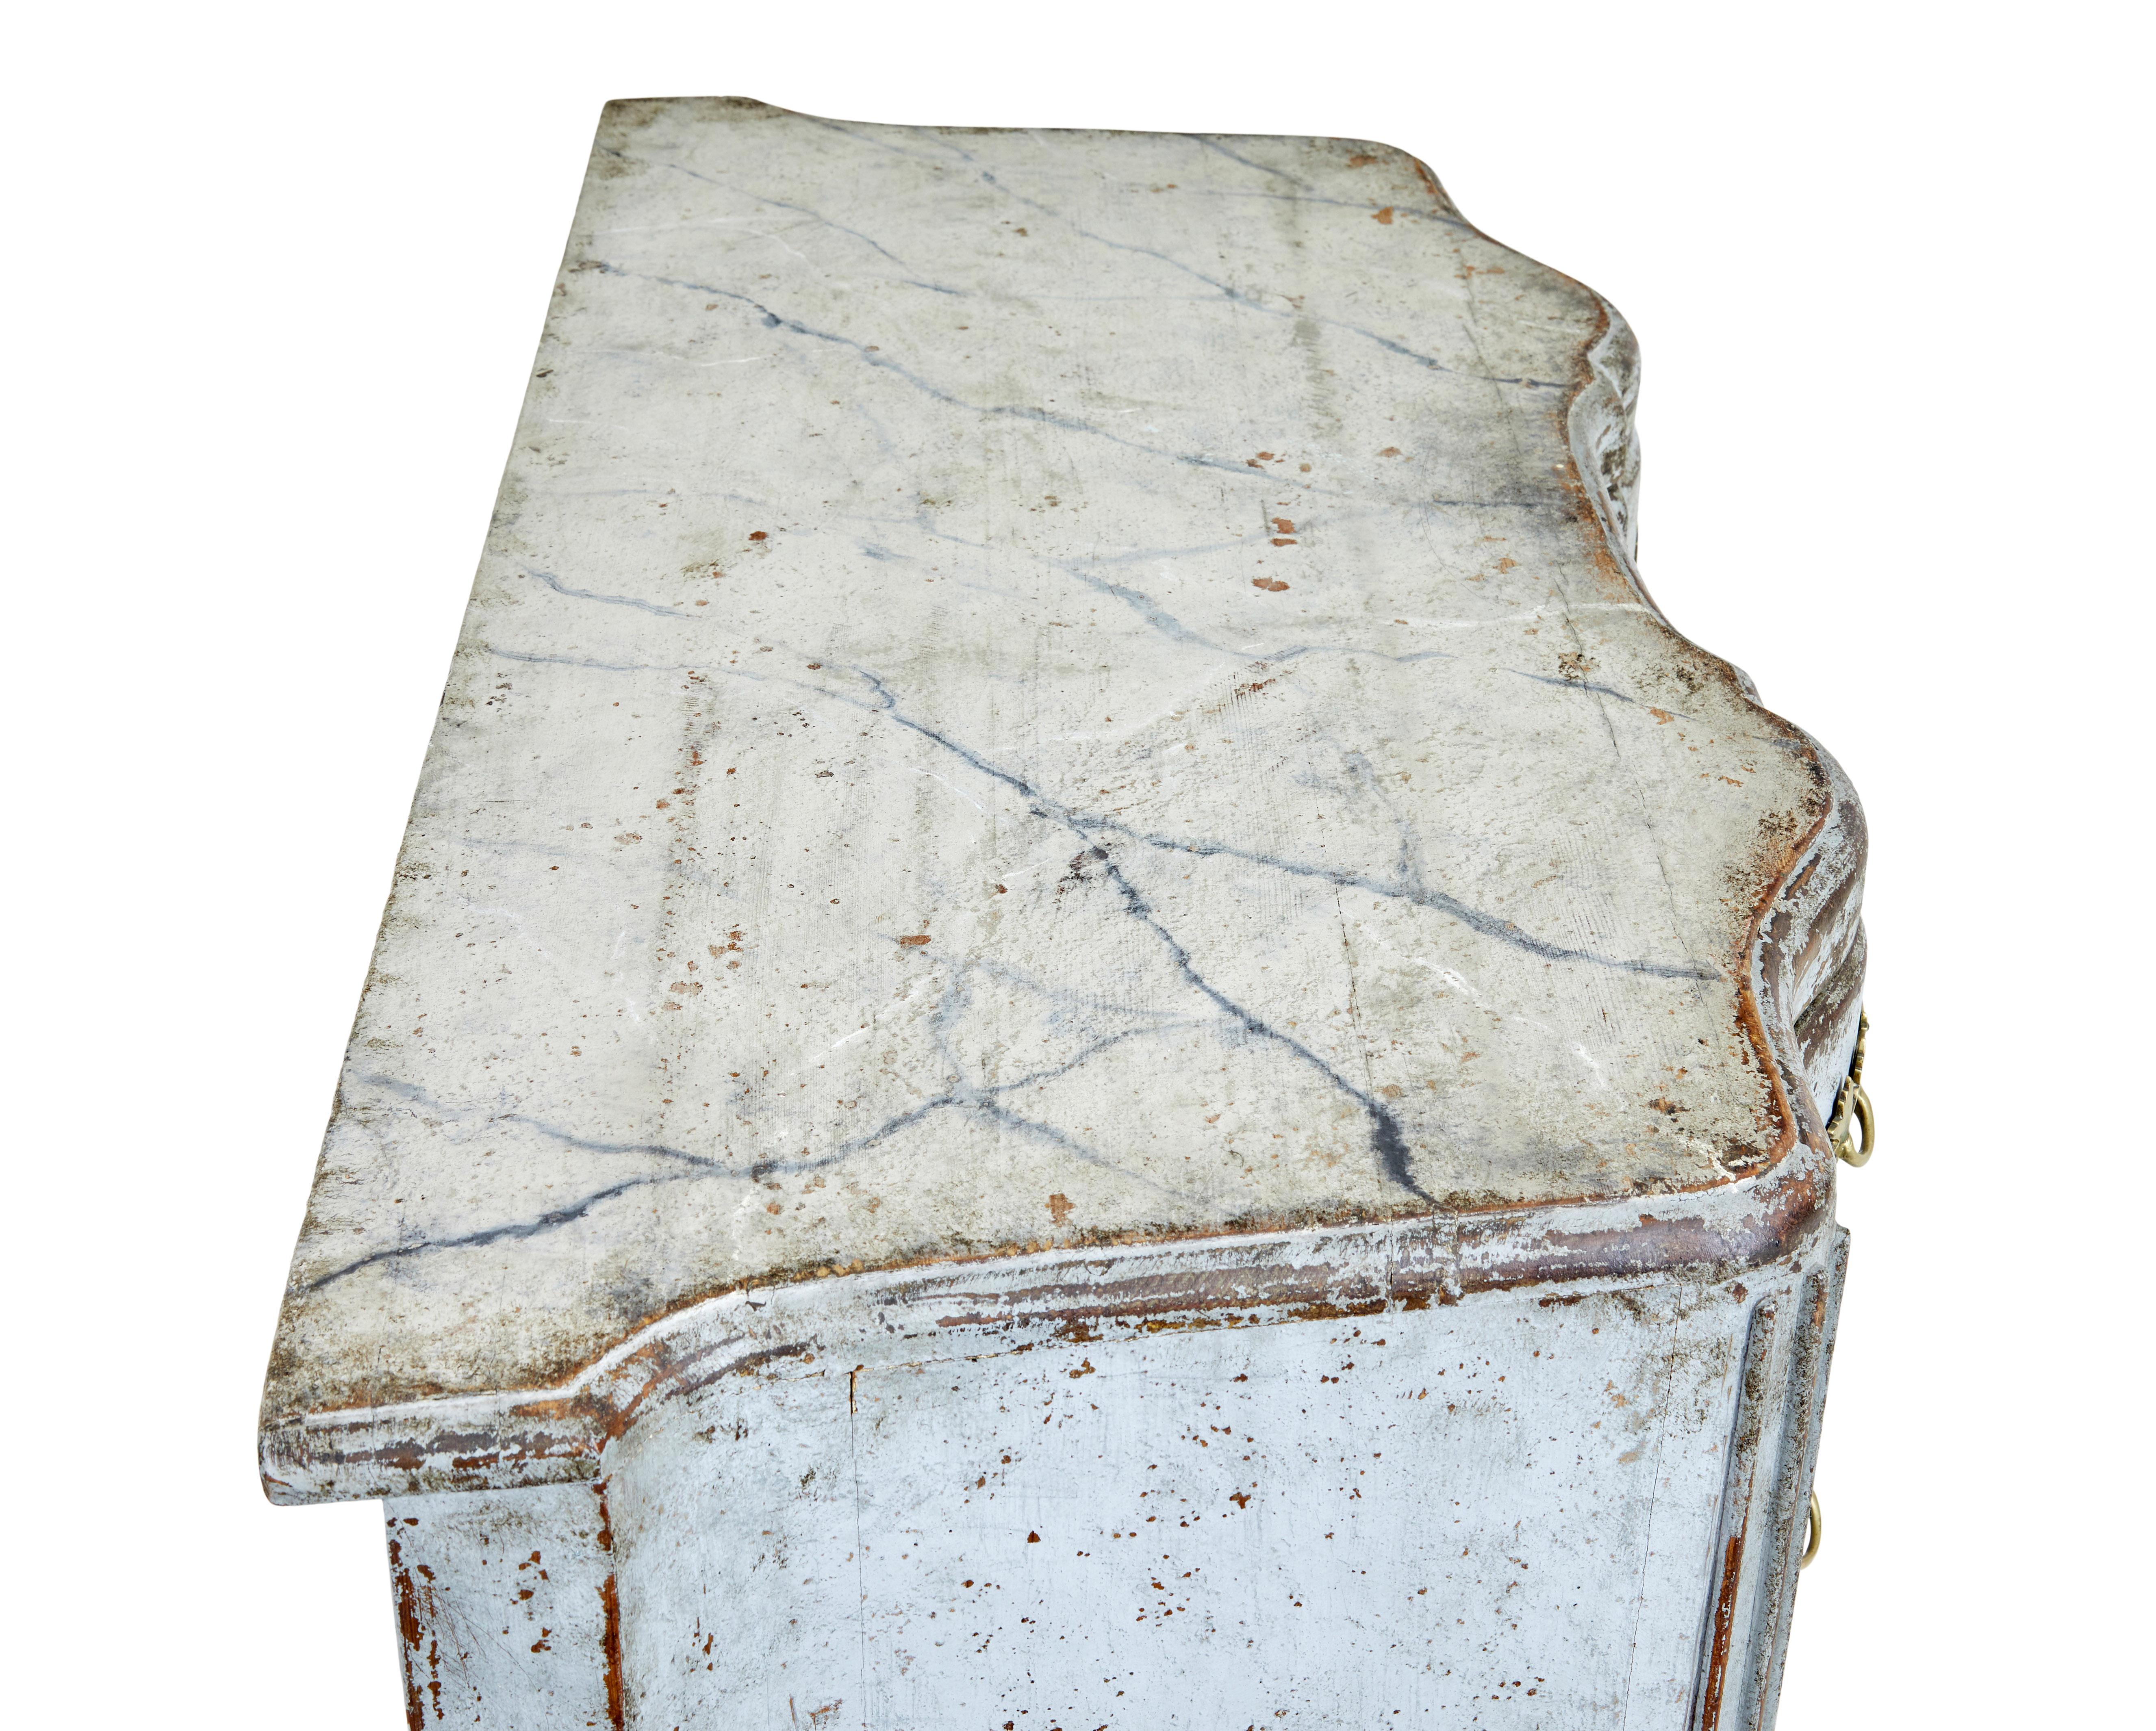 Schwedische, bemalte Barockkommode aus dem frühen 19. Jahrhundert, um 1820.

Kommode mit 3 Schubladen, geformten Seiten und serpentinenförmigen Schubladenfronten.  Gefertigt aus Eichenholz mit einem Anstrich aus dem frühen 20. Jahrhundert, der jetzt